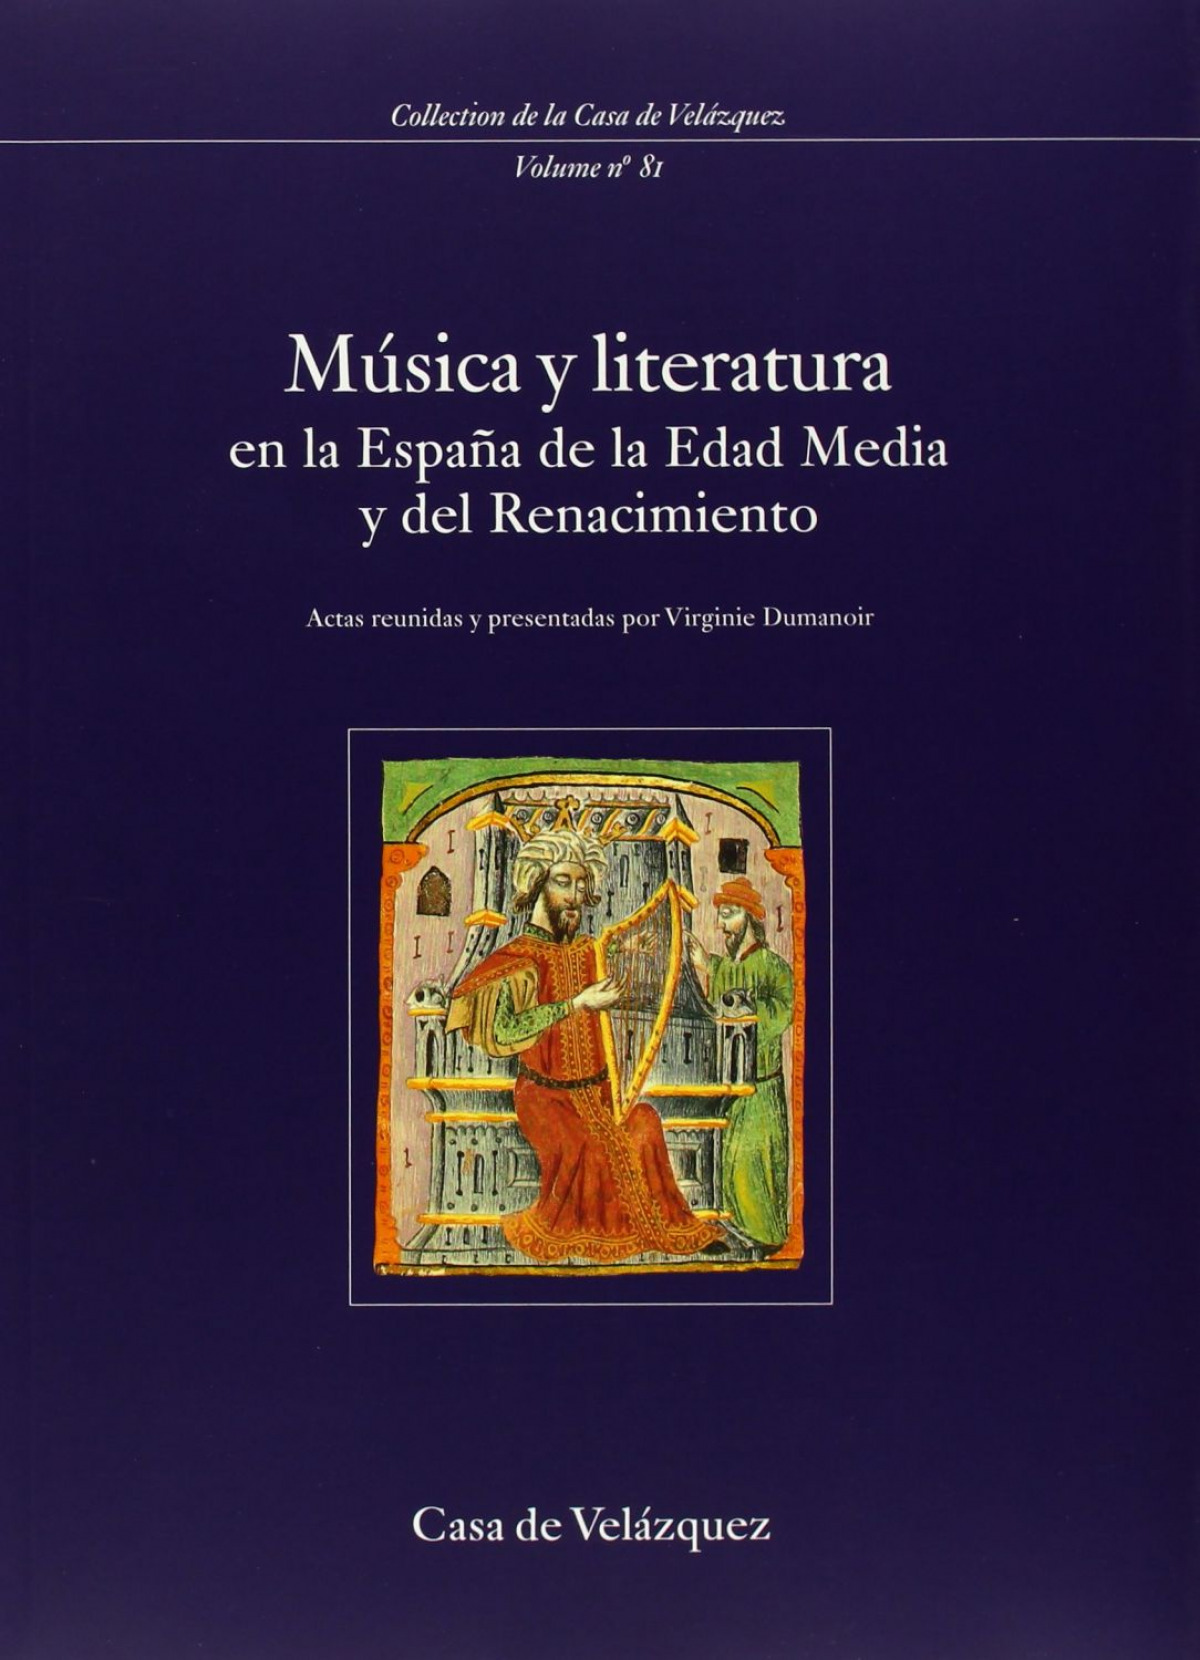 Música y literatura en la España de la Edad Media y del Rena - Dumanoir, Virginie (ed. lit.)